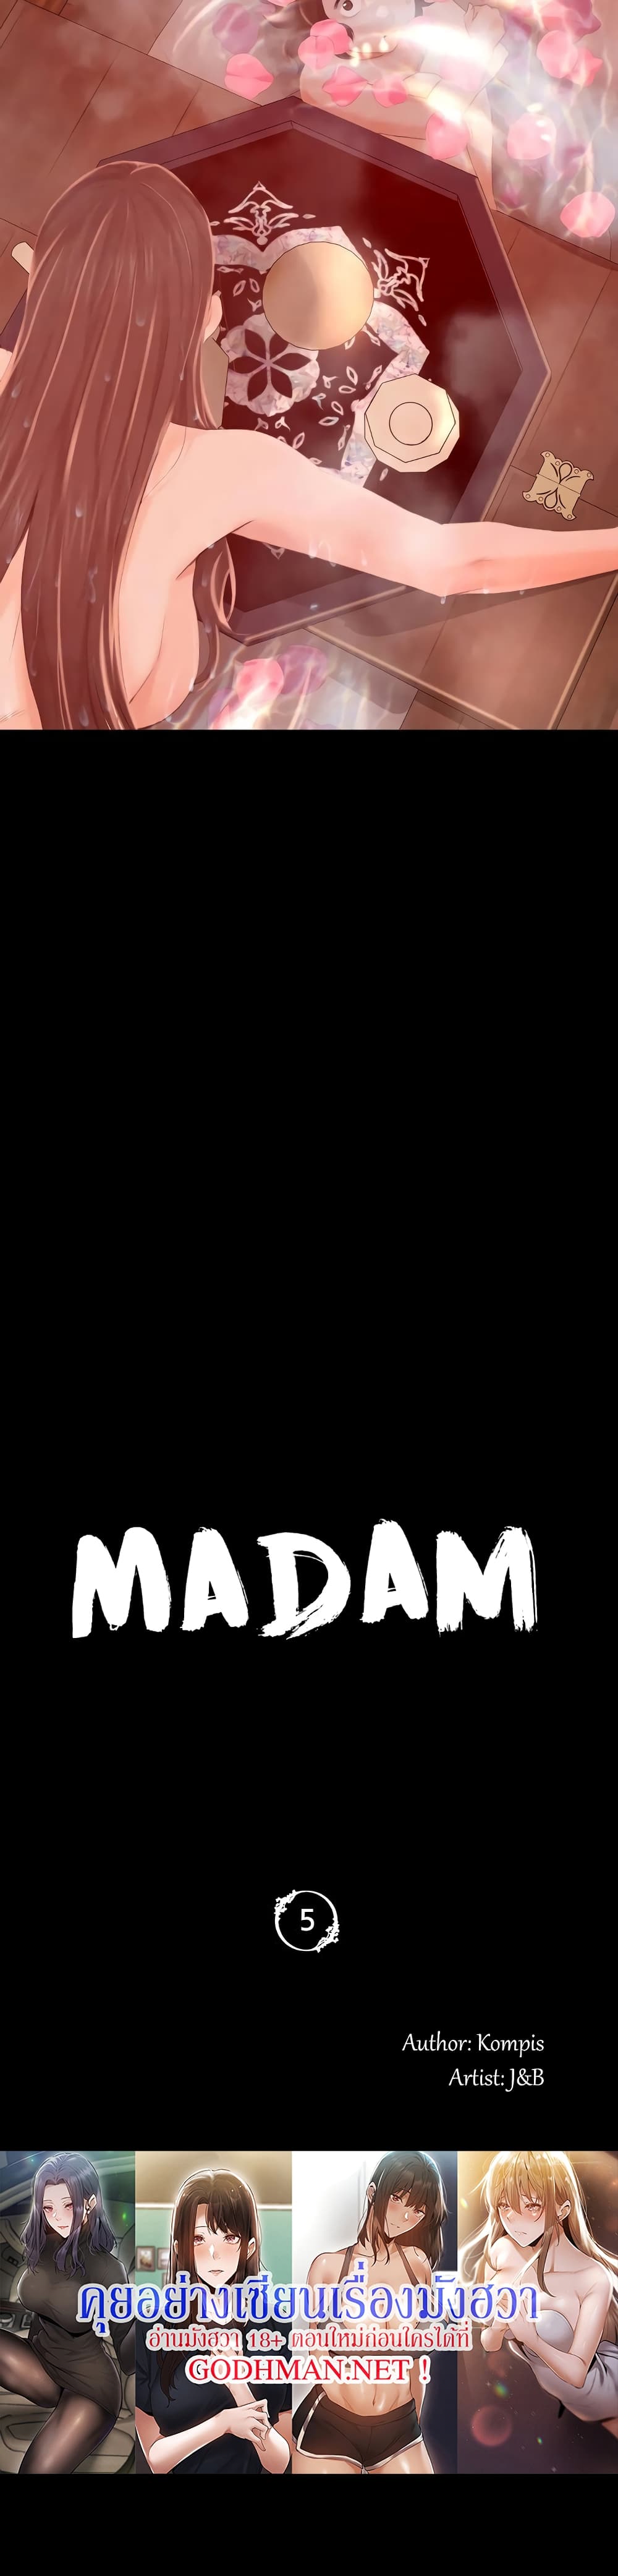 Madam 5 (5)